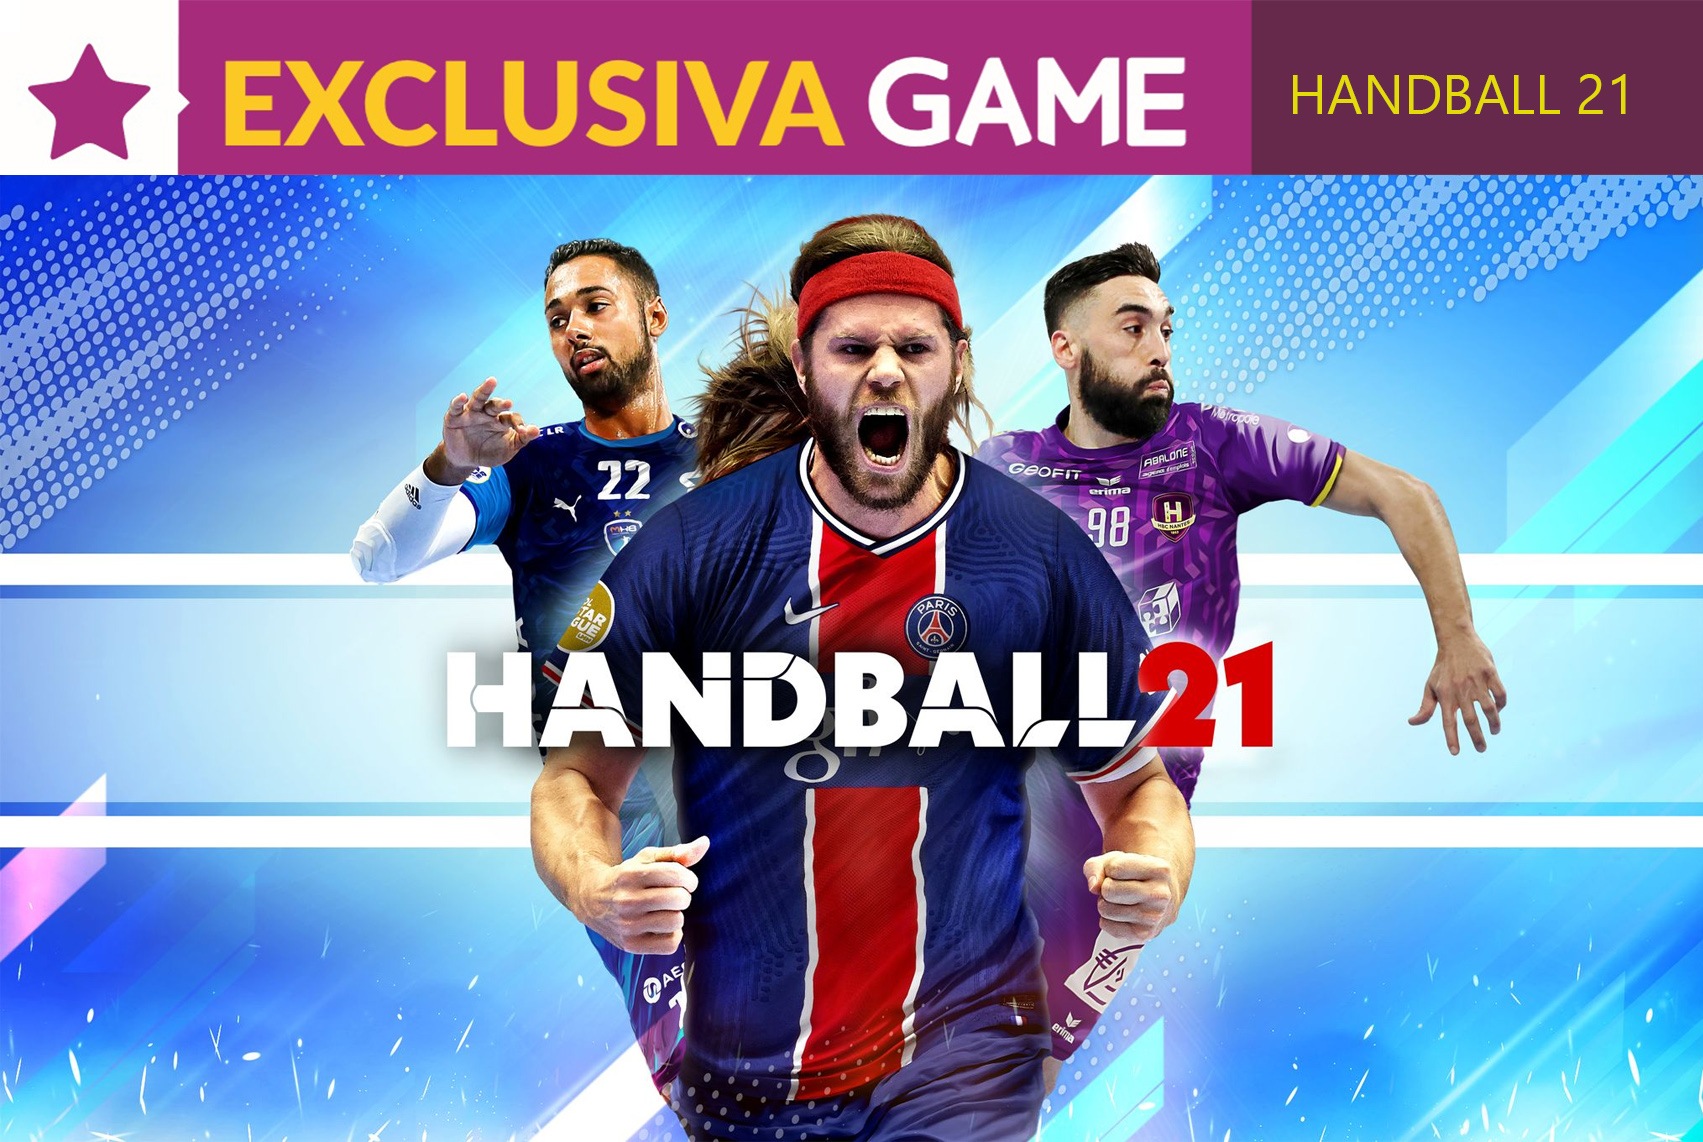 Handball 21